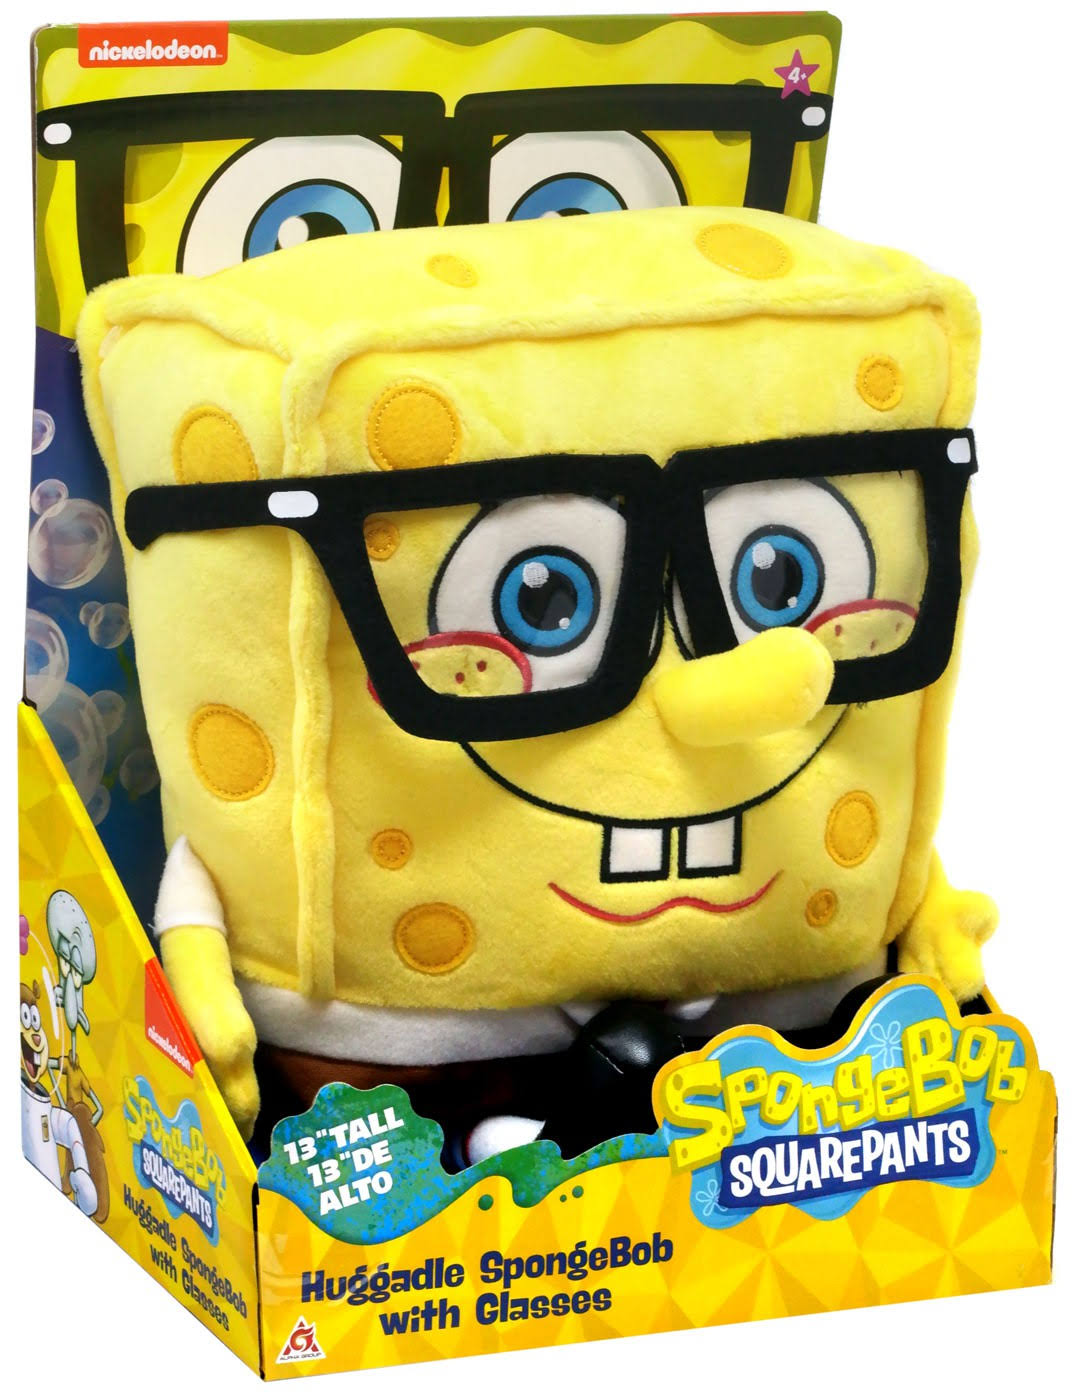 Nickelodeon Spongebob SquarePants Huggable Spongebob Plush [With Glasses]